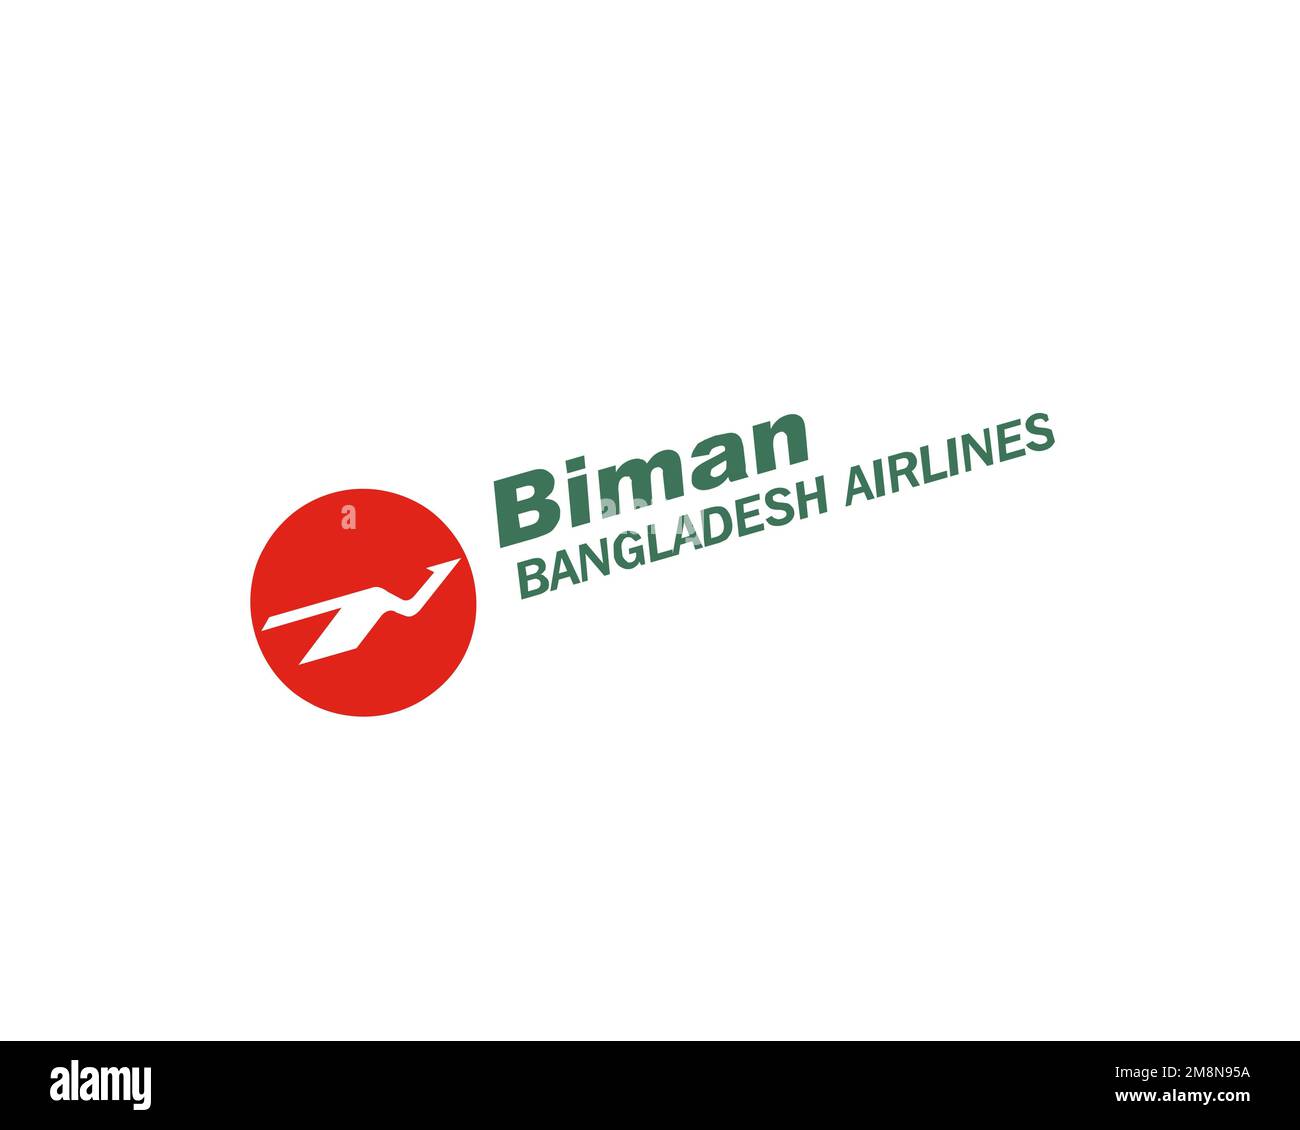 Biman Bangladesh Airline, rotated logo, white background Stock Photo ...